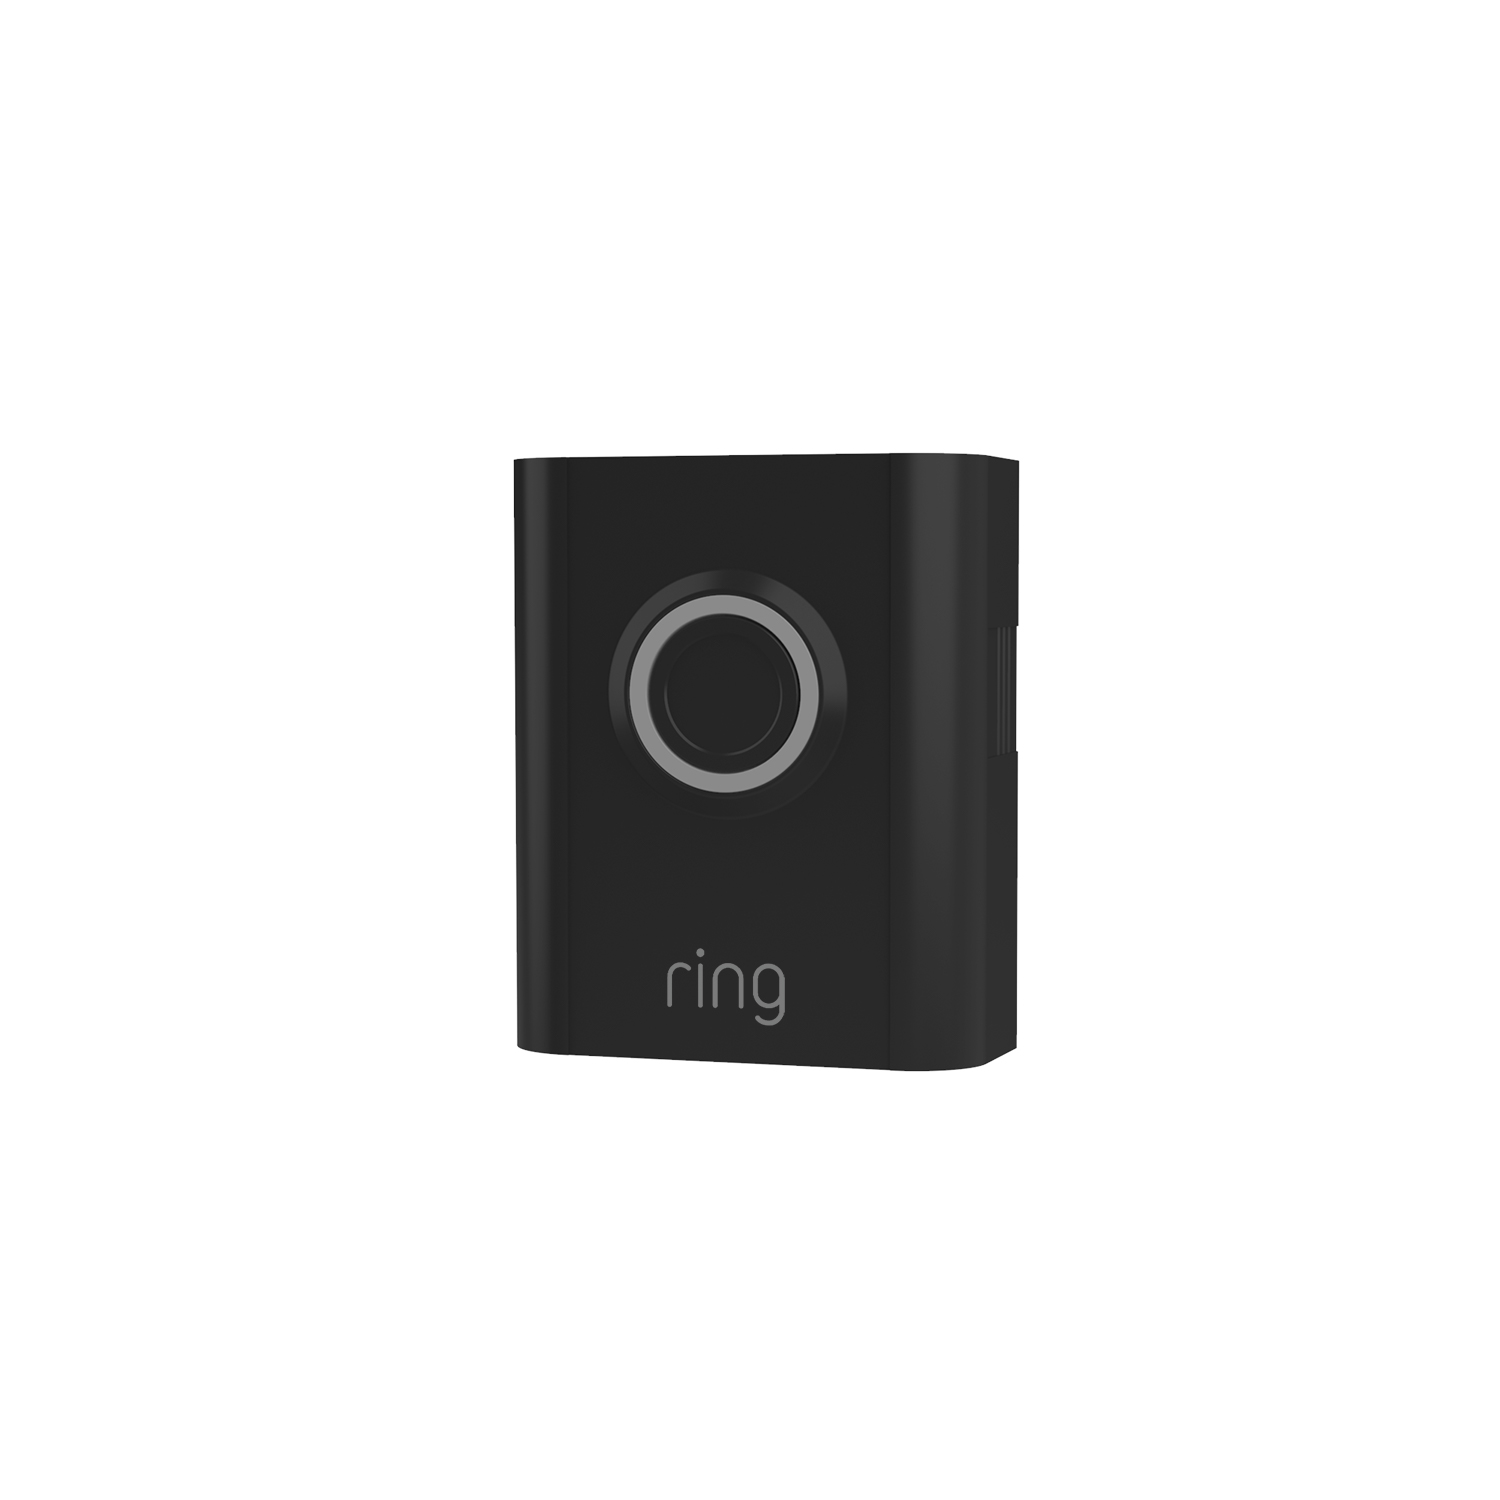 Interchangeable Faceplate (for Video Doorbell 3, Video Doorbell 3 Plus, Video Doorbell 4, Battery Doorbell Plus, Battery Doorbell Pro) - Smooth Black